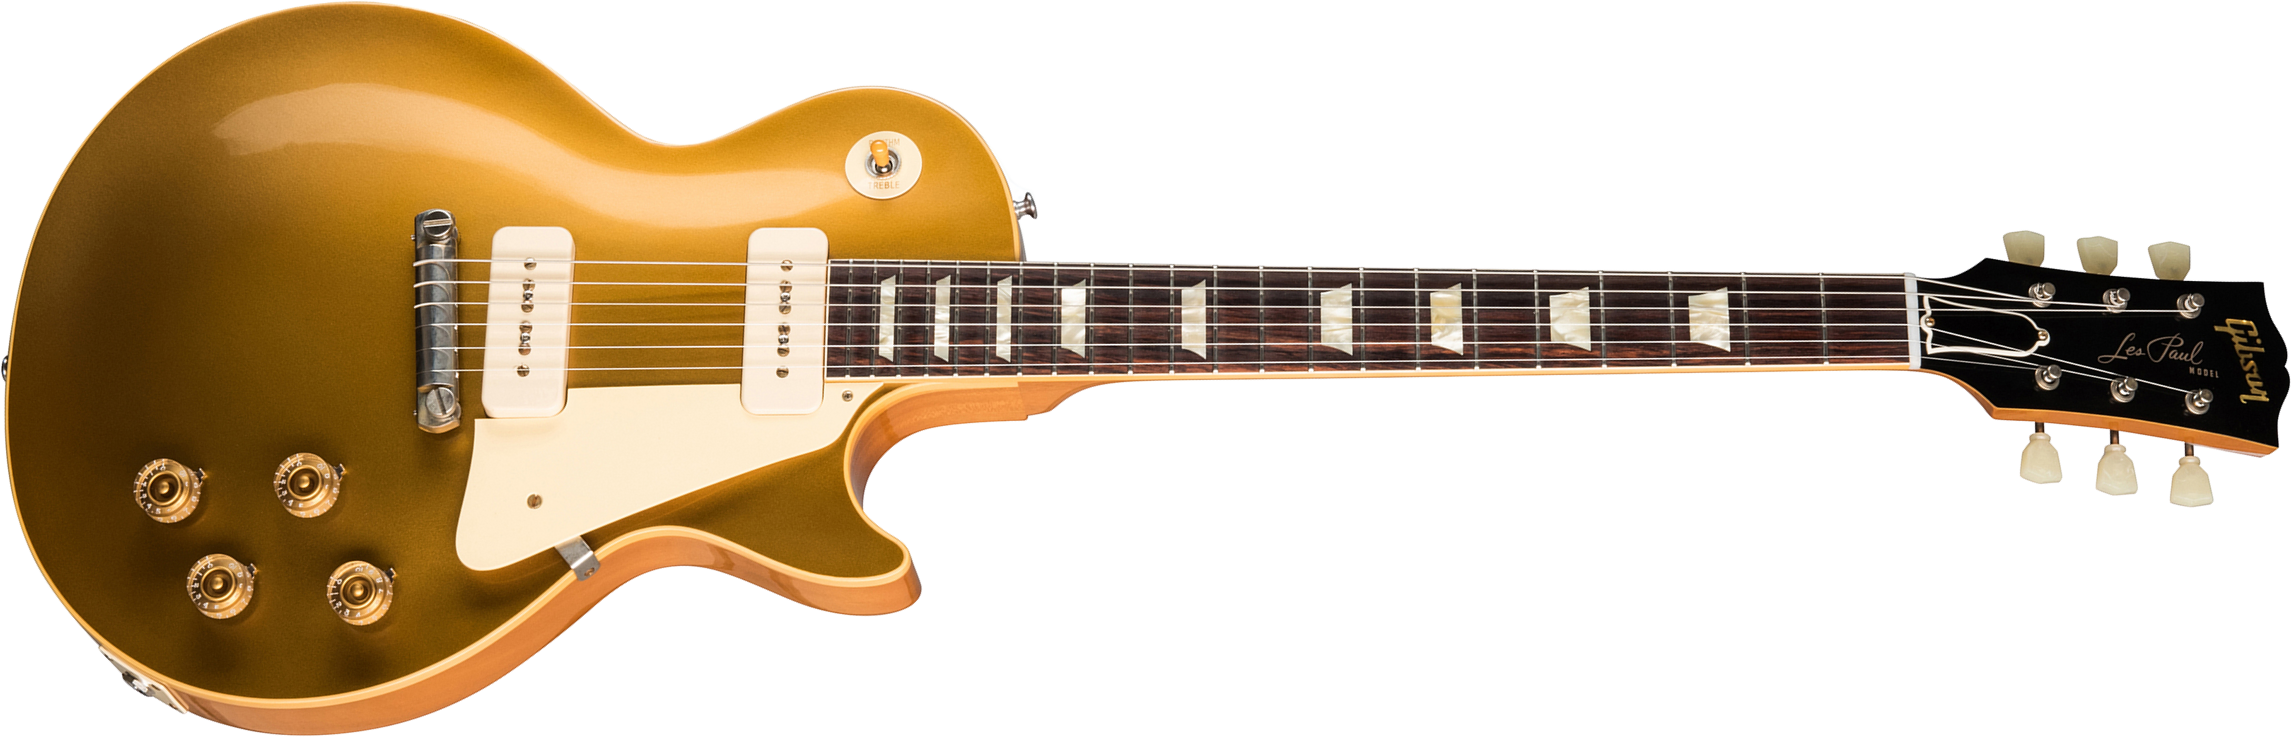 Gibson Custom Shop Les Paul Goldtop 1954 Reissue 2019 2p90 Ht Rw - Vos Double Gold - Enkel gesneden elektrische gitaar - Main picture